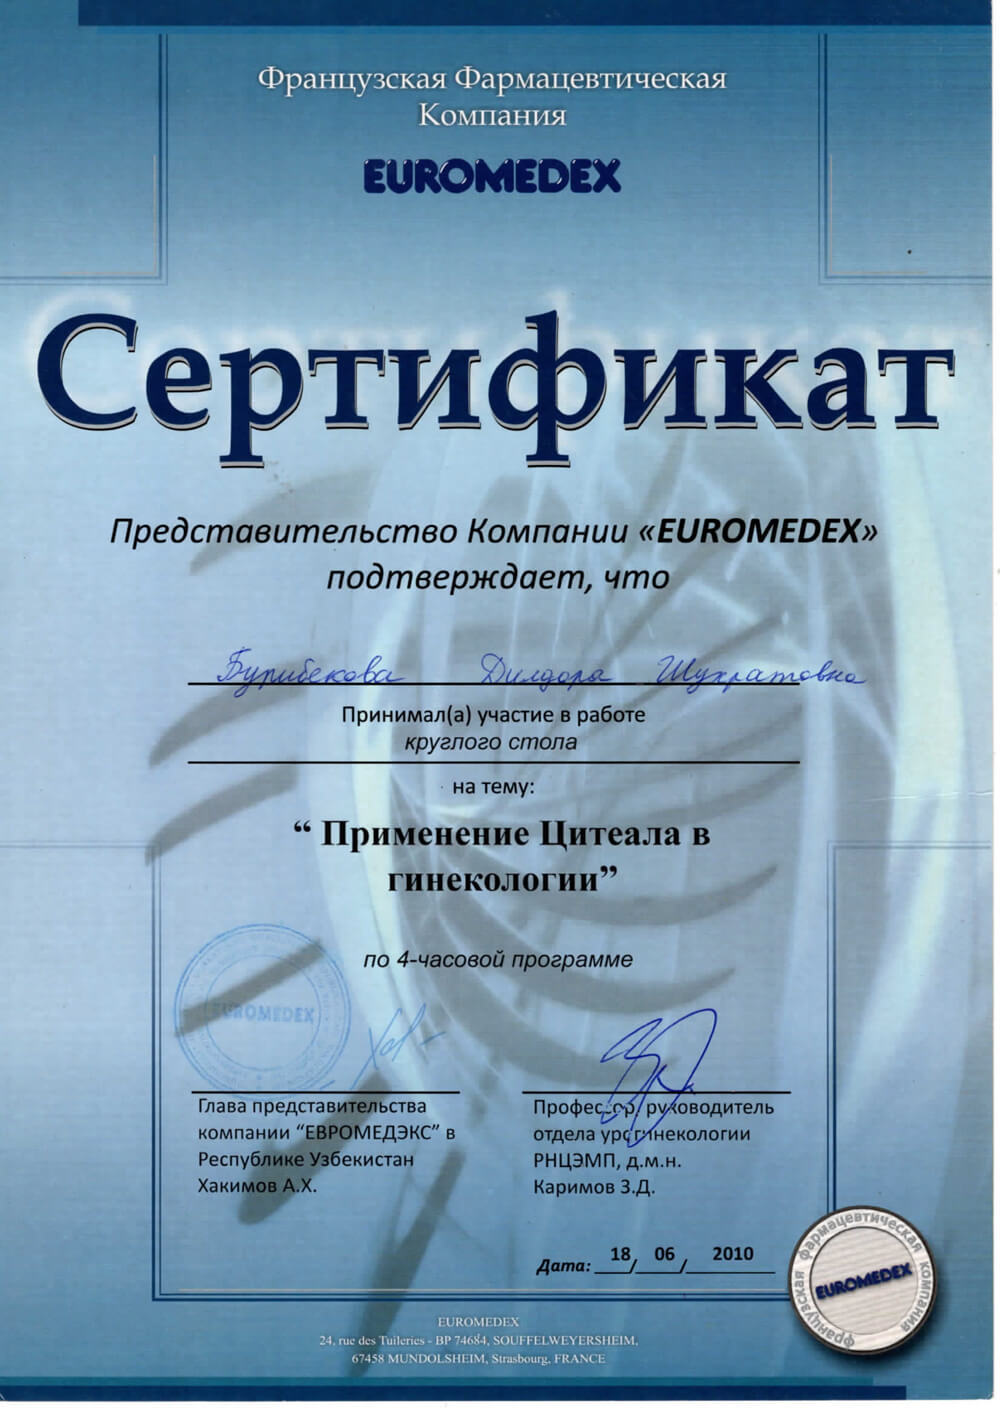 Сертификат об участии в работе круглого стола на тему «Применение Цитеала в гинекологии»